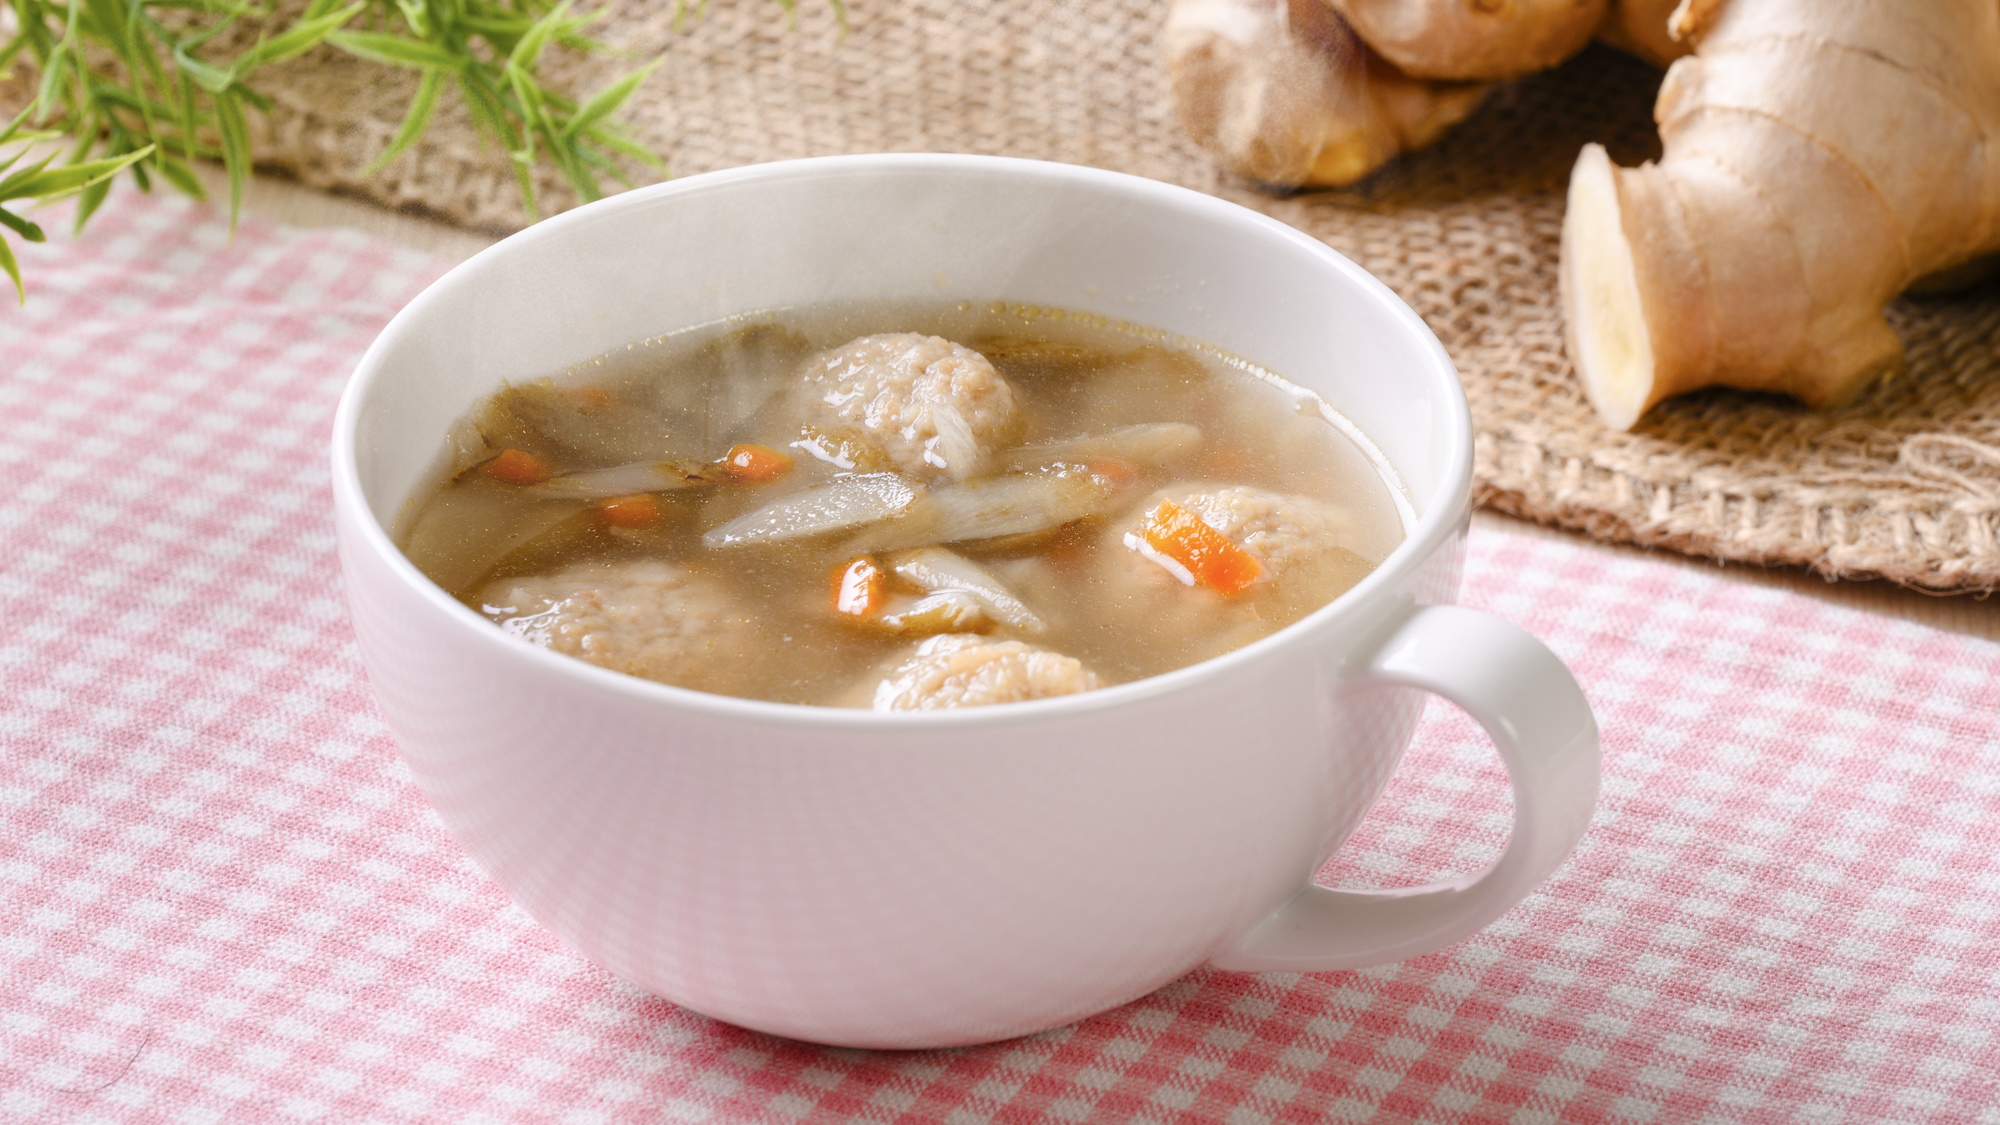 【高知限定】生姜の国内生産量日本一の高知県。心も身体も温まる生姜スープをお召し上がりください。